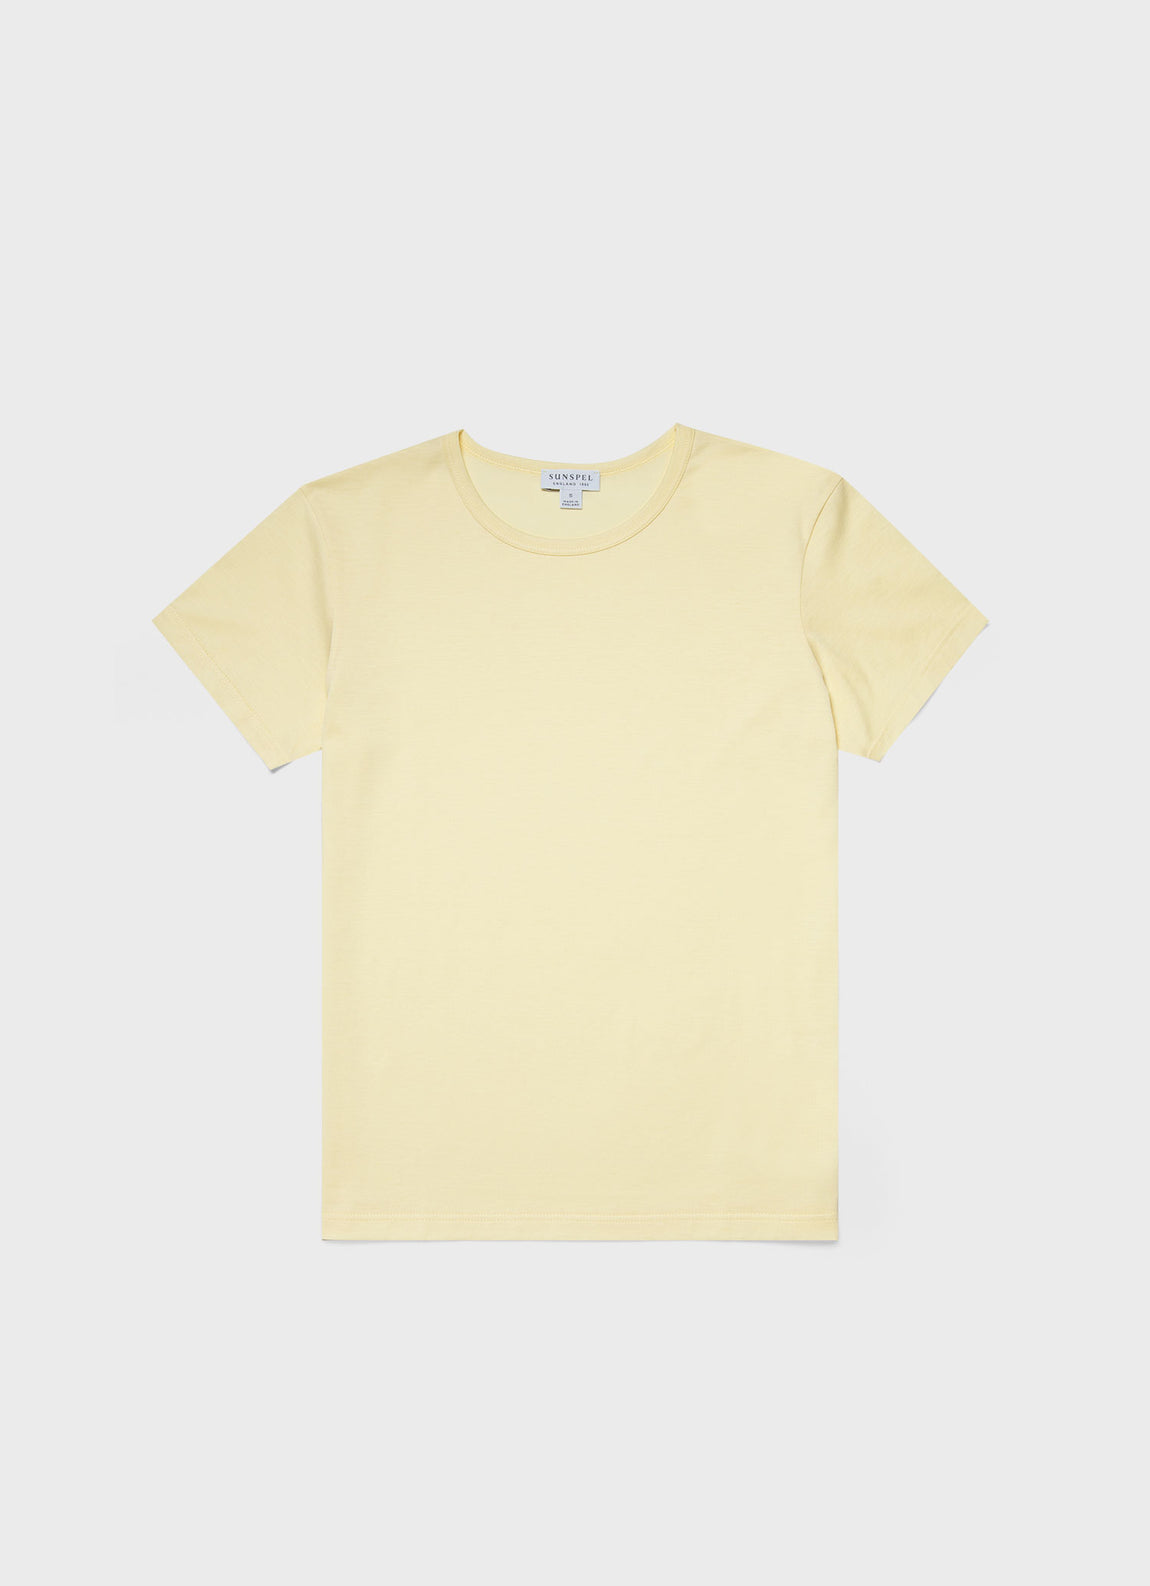 Women's Classic T-shirt in Lemon